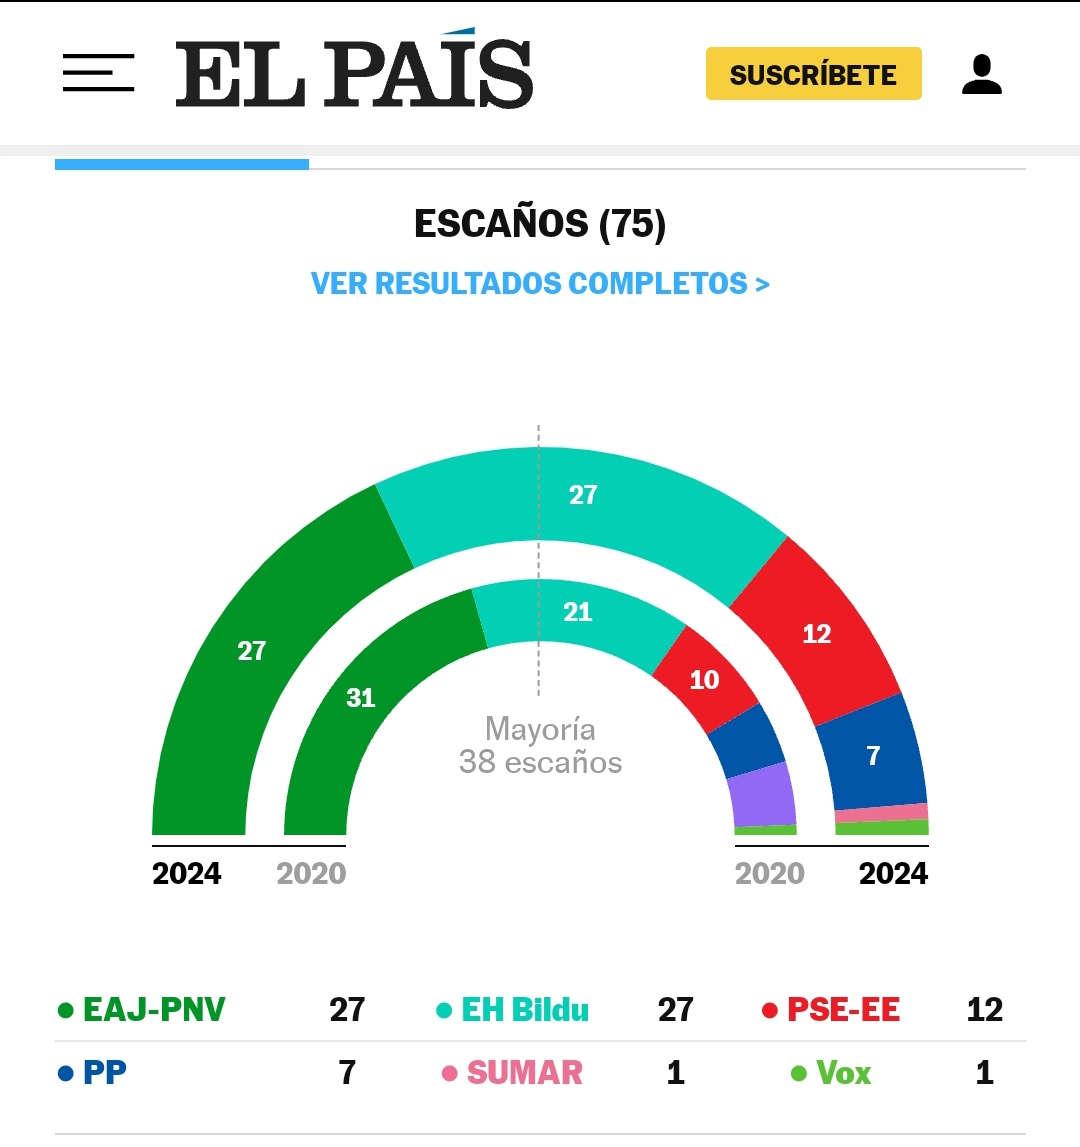 Els bascos sí saben votar.
Bildu s'endú tots els vots de l'esquerra i el PNV de la dreta. Així ja tenen la seva autonomia de decisió, sense dependre de maniobres des de Madrid. Mentre les Balears siguem una sucursal del PP i PSOE estatals, mai tindrem capacitat real de decisió.